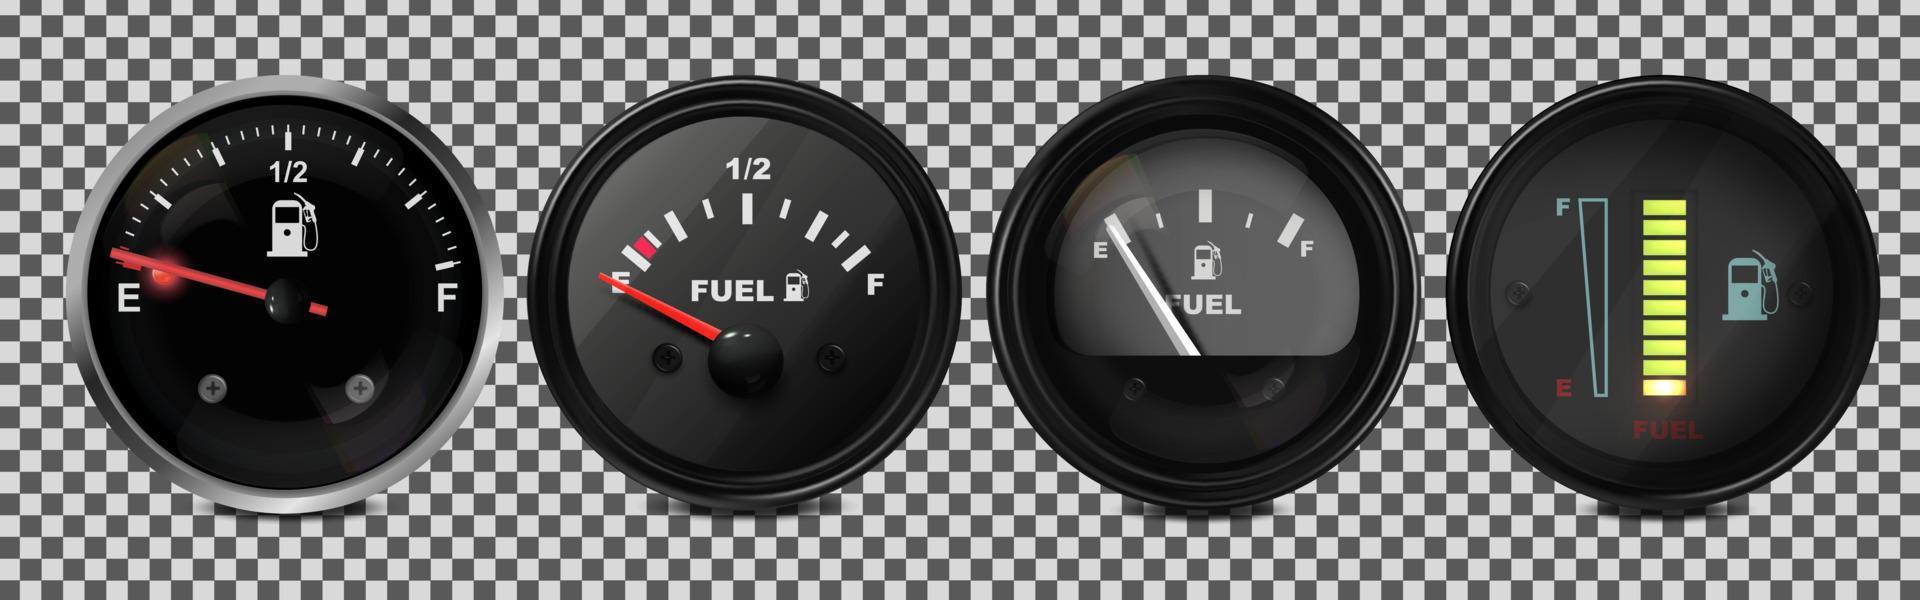 vecteur réaliste, ensemble 3d d'indicateurs de niveau de carburant dans une voiture. illustration sur fond transparent.